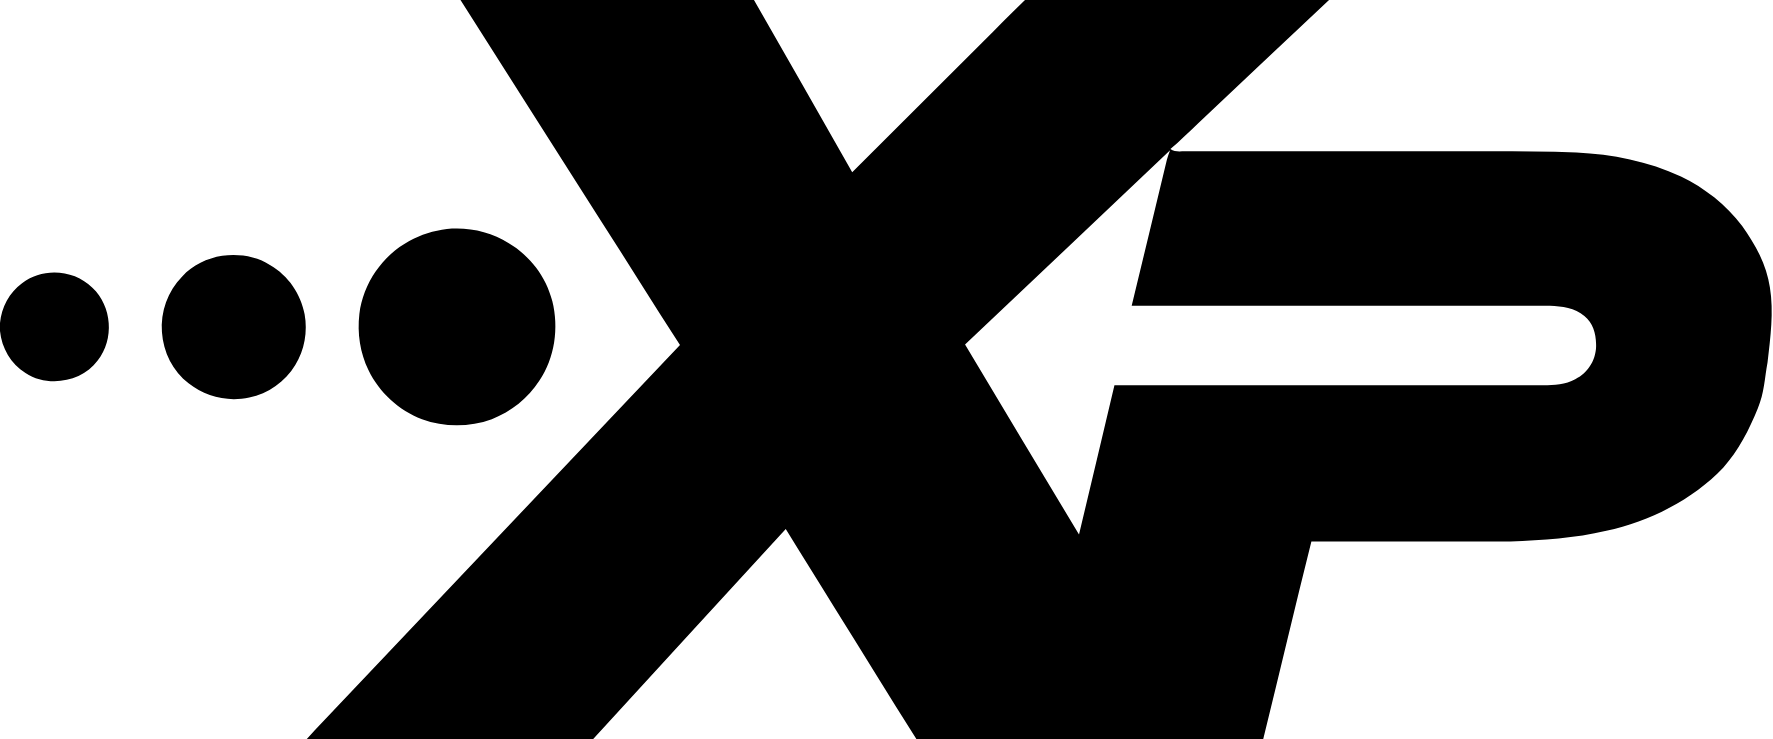 XPEL logo (PNG transparent)